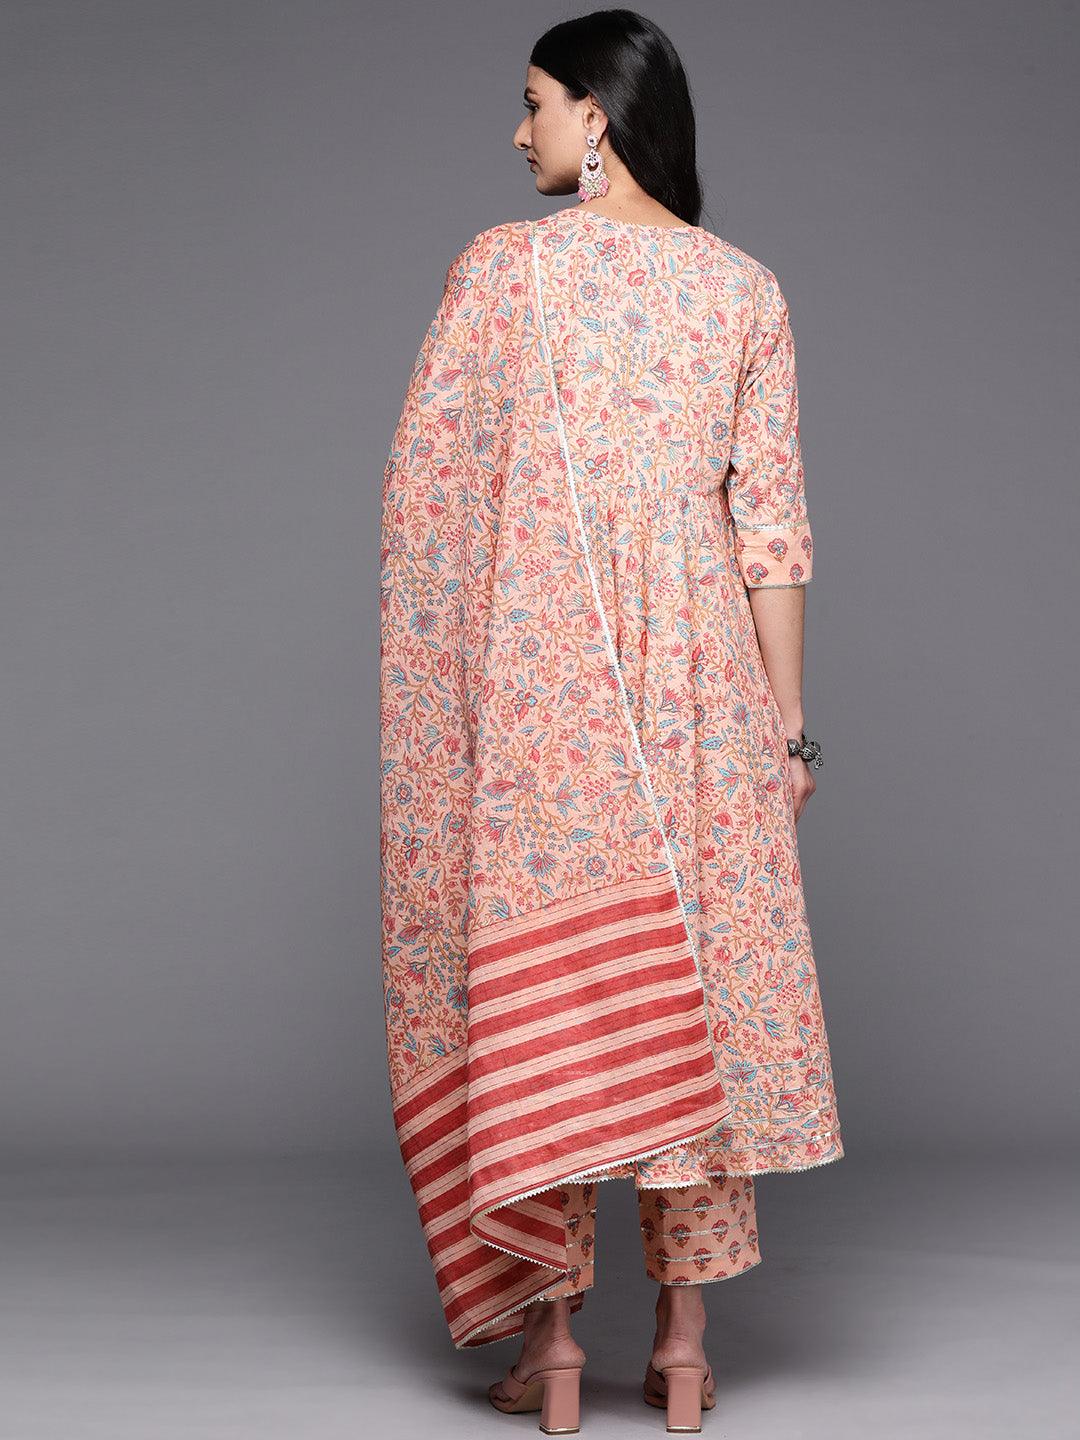 Peach Yoke Design Cotton Anarkali Suit Set With Trousers - Libas